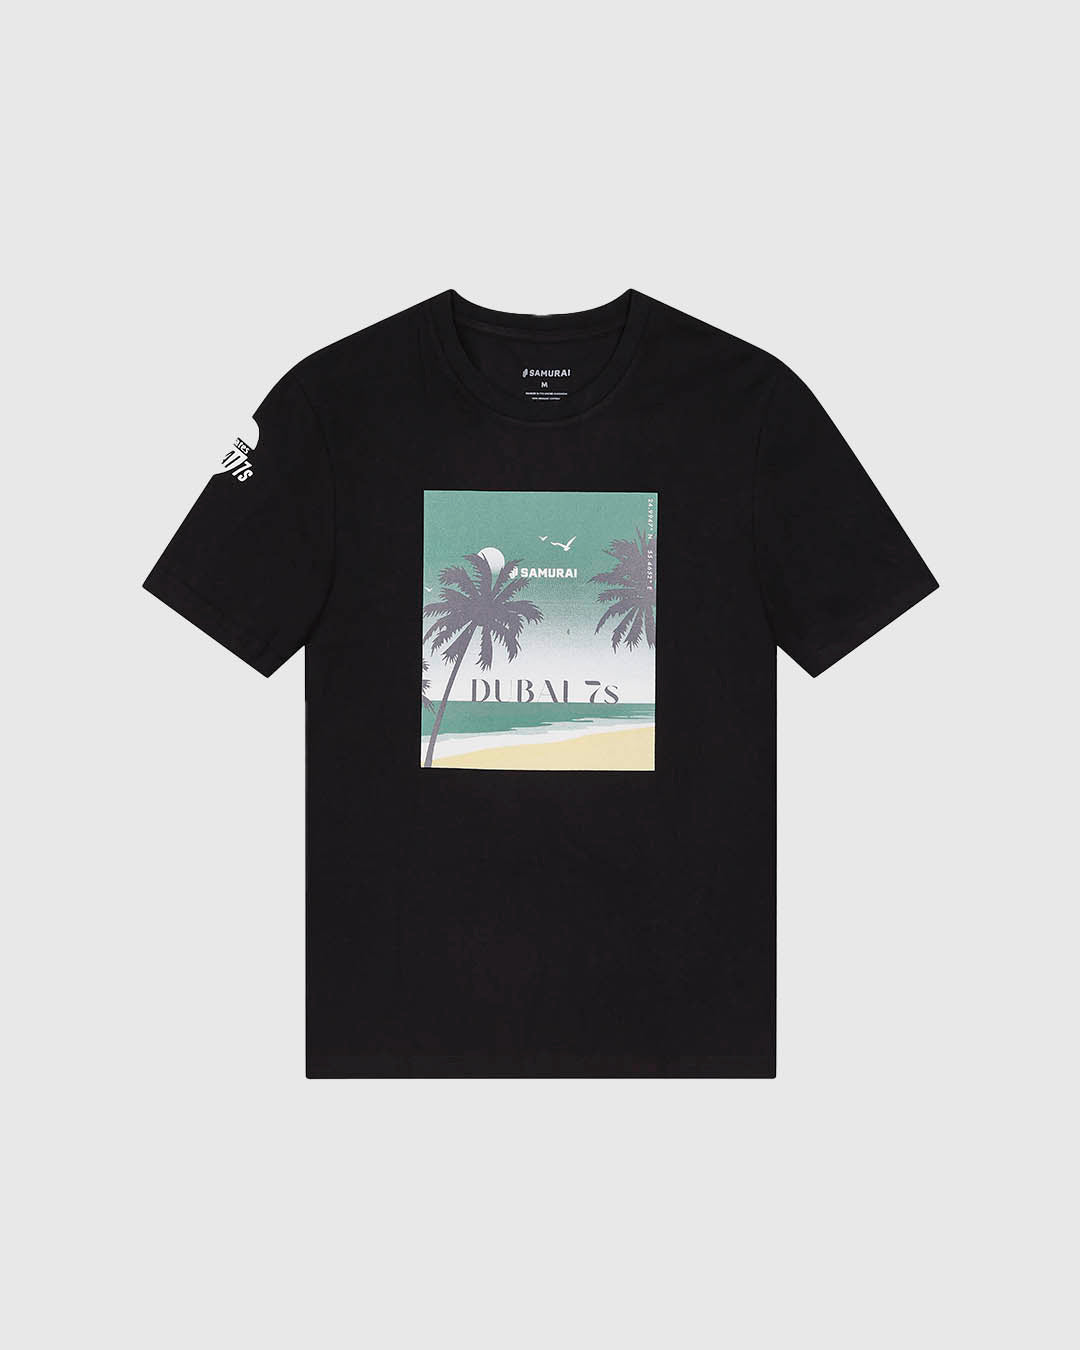 ED7:04 - Beach Dreams Postcard T-Shirt - Black